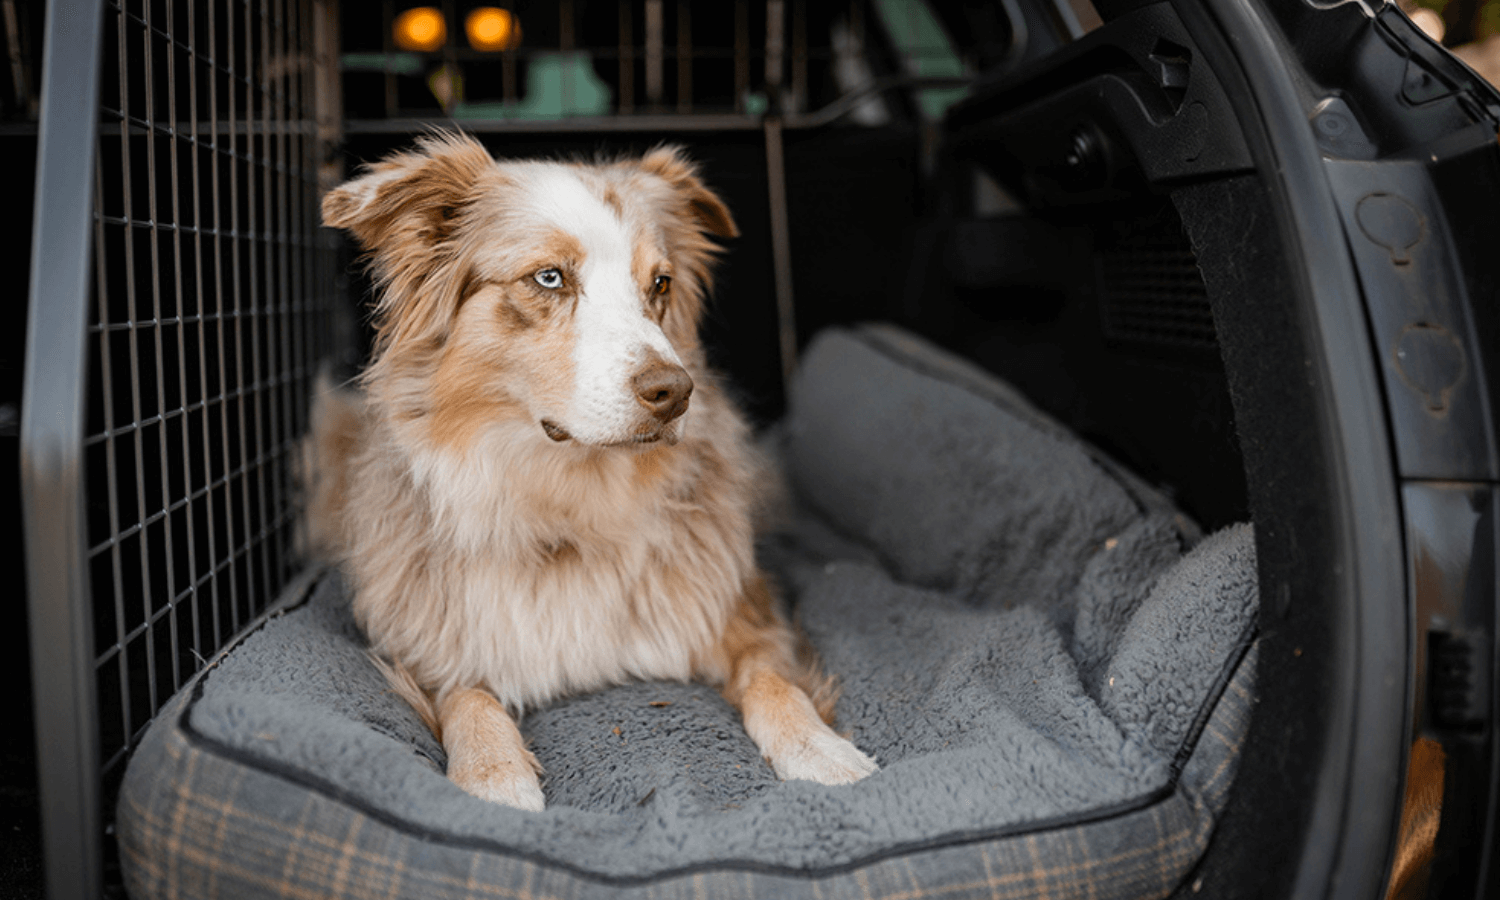 Hundegitter und Kofferraumteiler von Travall tragen dazu bei, dass der Hund es im Kofferraum sicher und gemütlich hat. © Travall